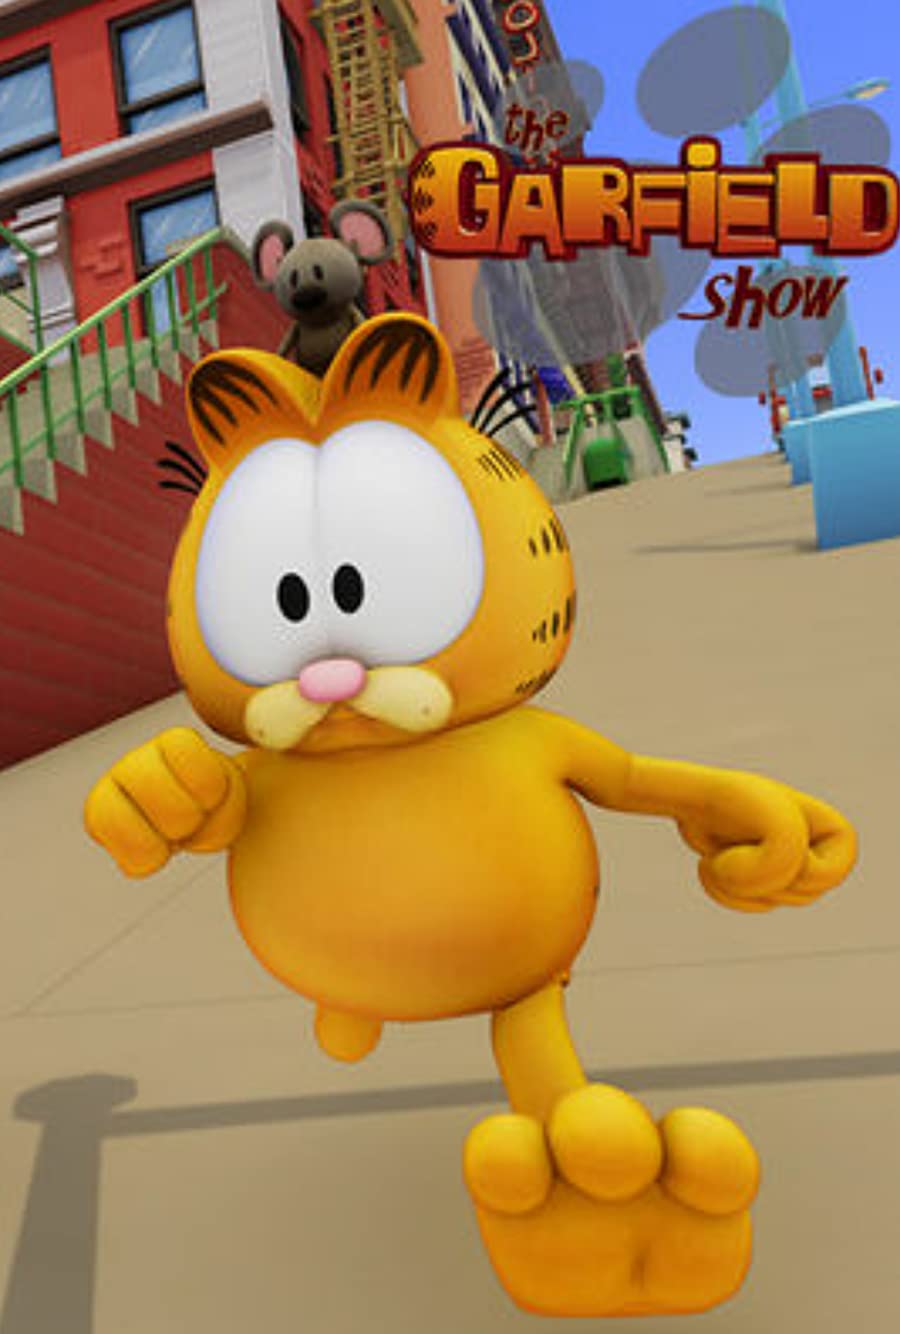 دانلود سریال گارفیلد The Garfield Show